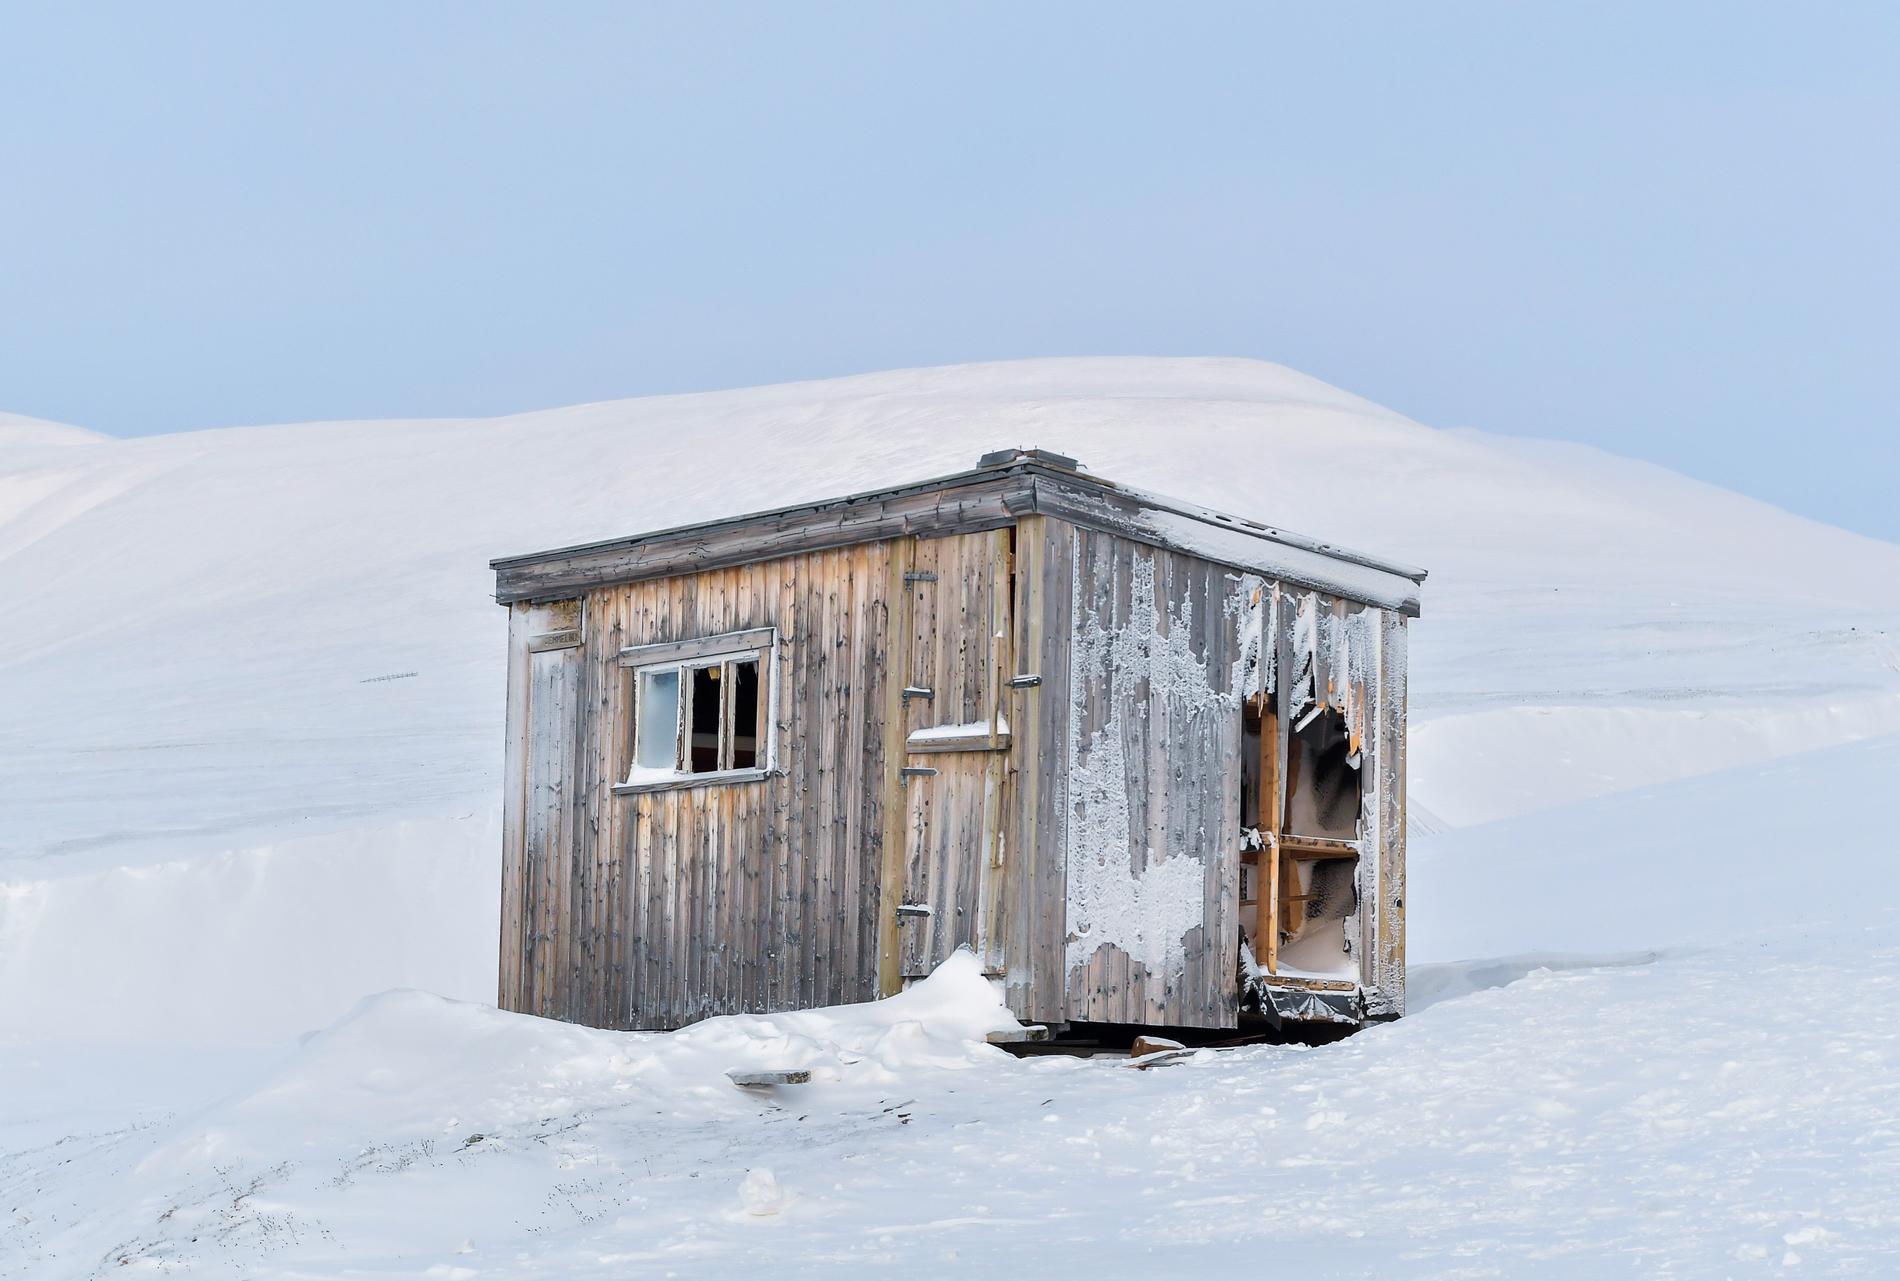 Det karga arktiska landskapet lockar varje år tiotusentals besökare. Högsäsongen hade just inletts när turisterna skickades hem på grund av coronaviruset.